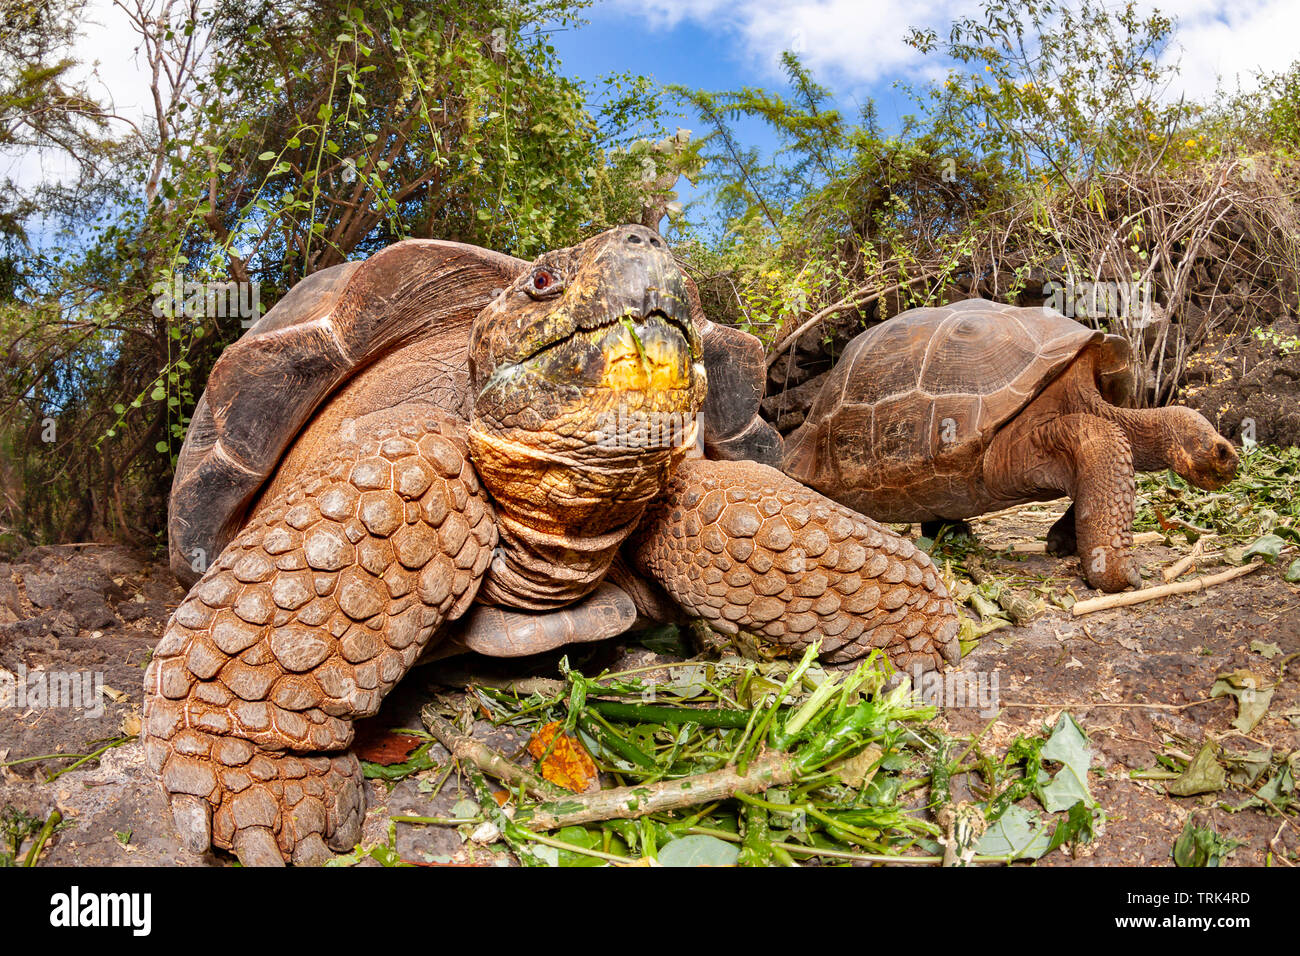 Die Galapagos Schildkröte, Chelonoidis nigra, sind die größten Lebewesen der Schildkröte, die bis zu 880 Pfund wachsen kann und mehr als 6 Fuß in len erreichen. Stockfoto